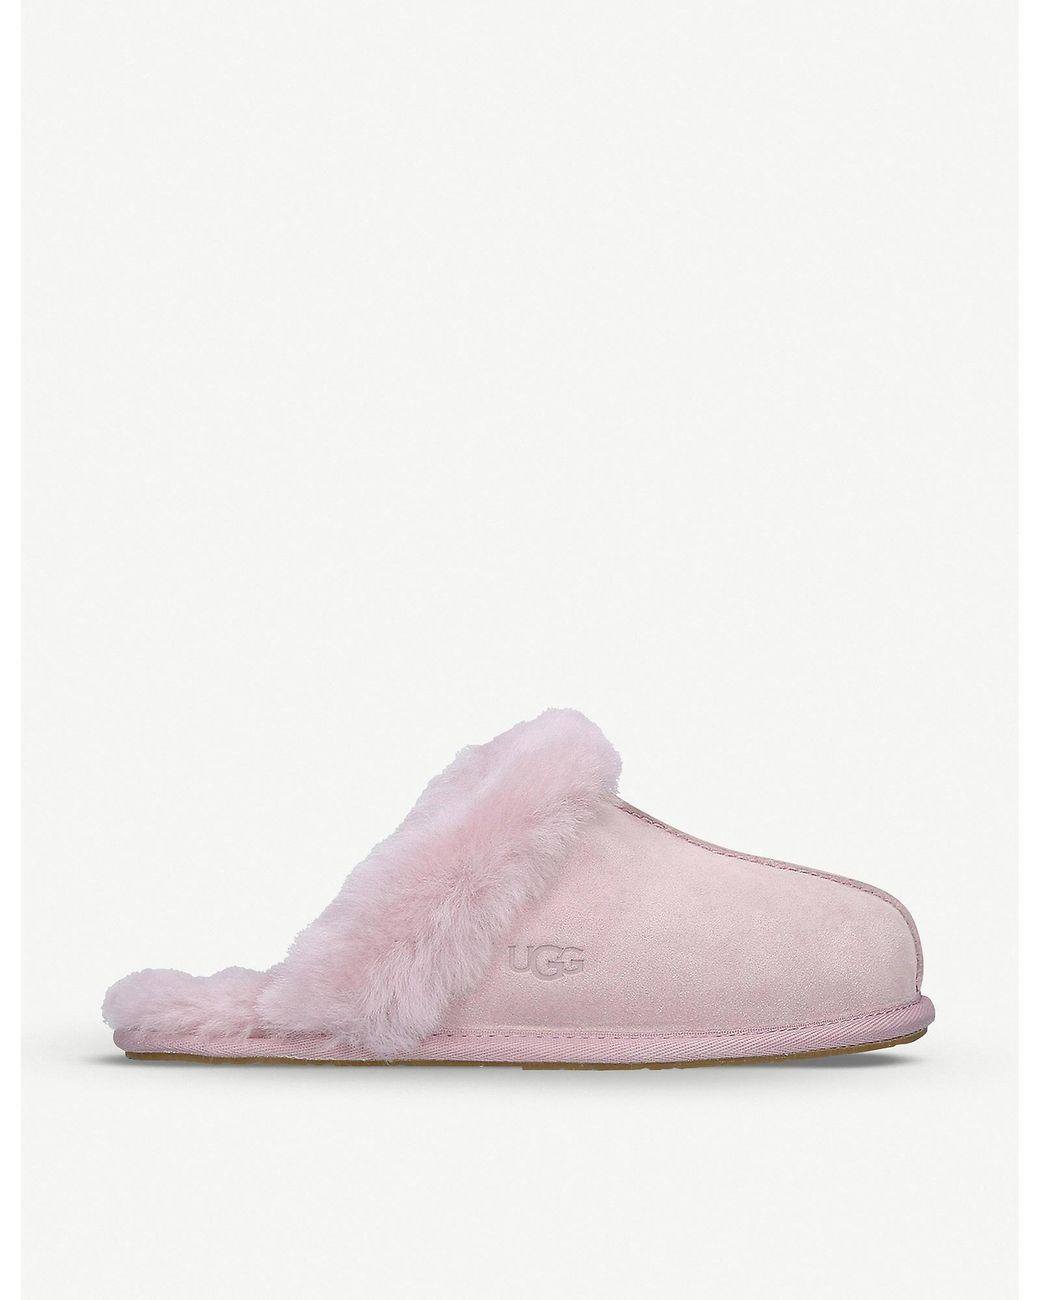 UGG Scuffette Ii Sheepskin Slippers in Pink | Lyst